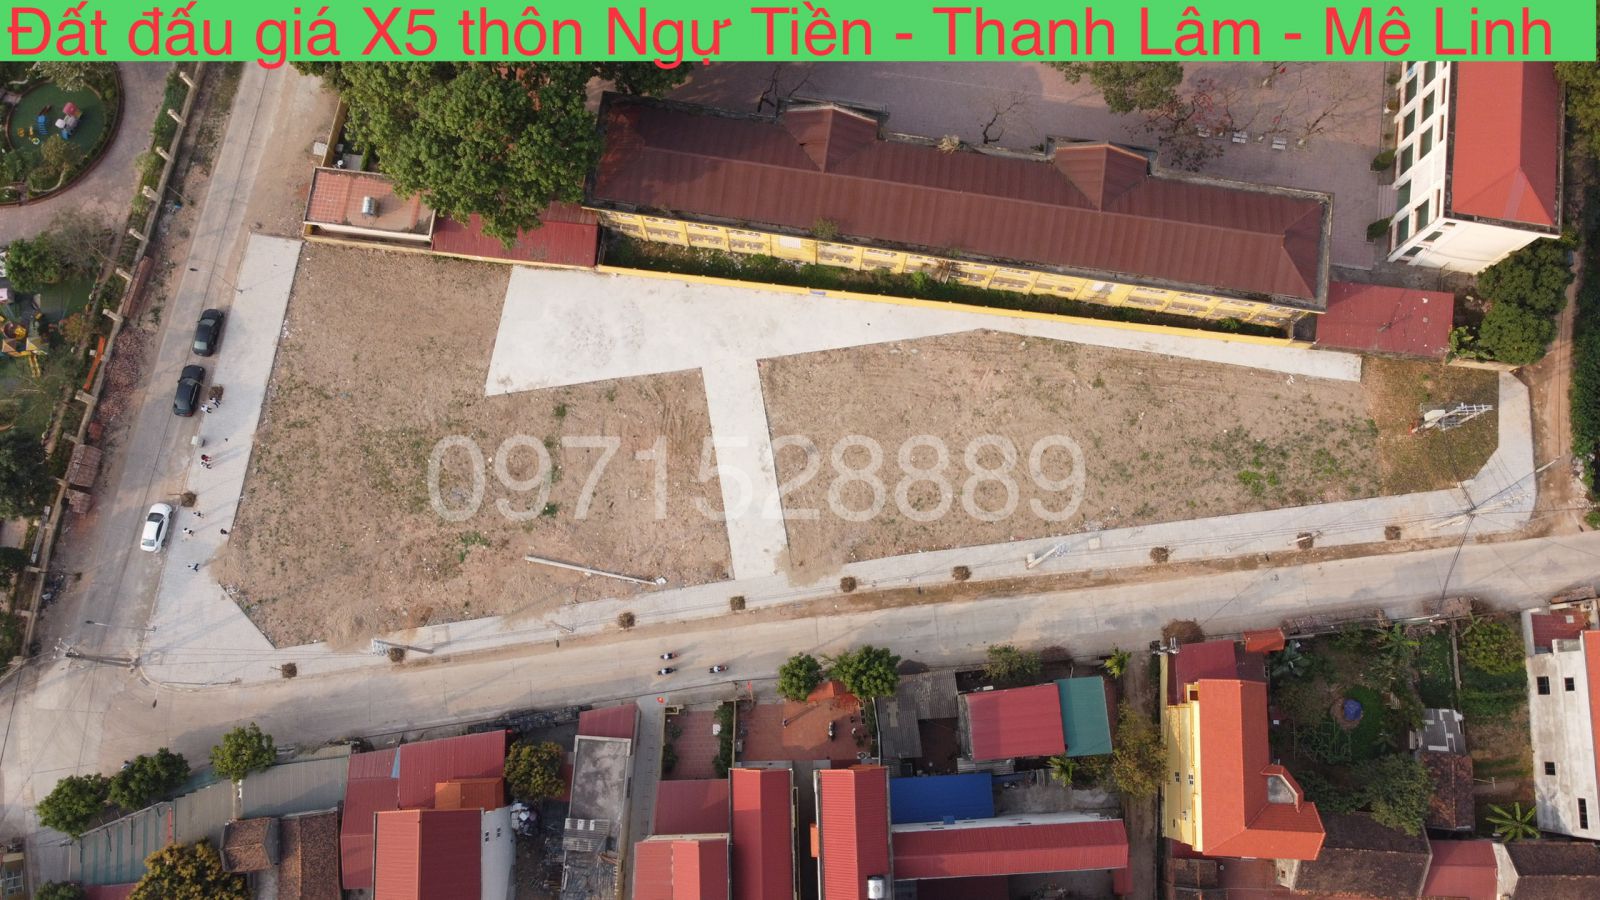  Vị trí đất đấu giá X5 thôn Ngự Tiền xã Thanh Lâm huyện Mê Linh 